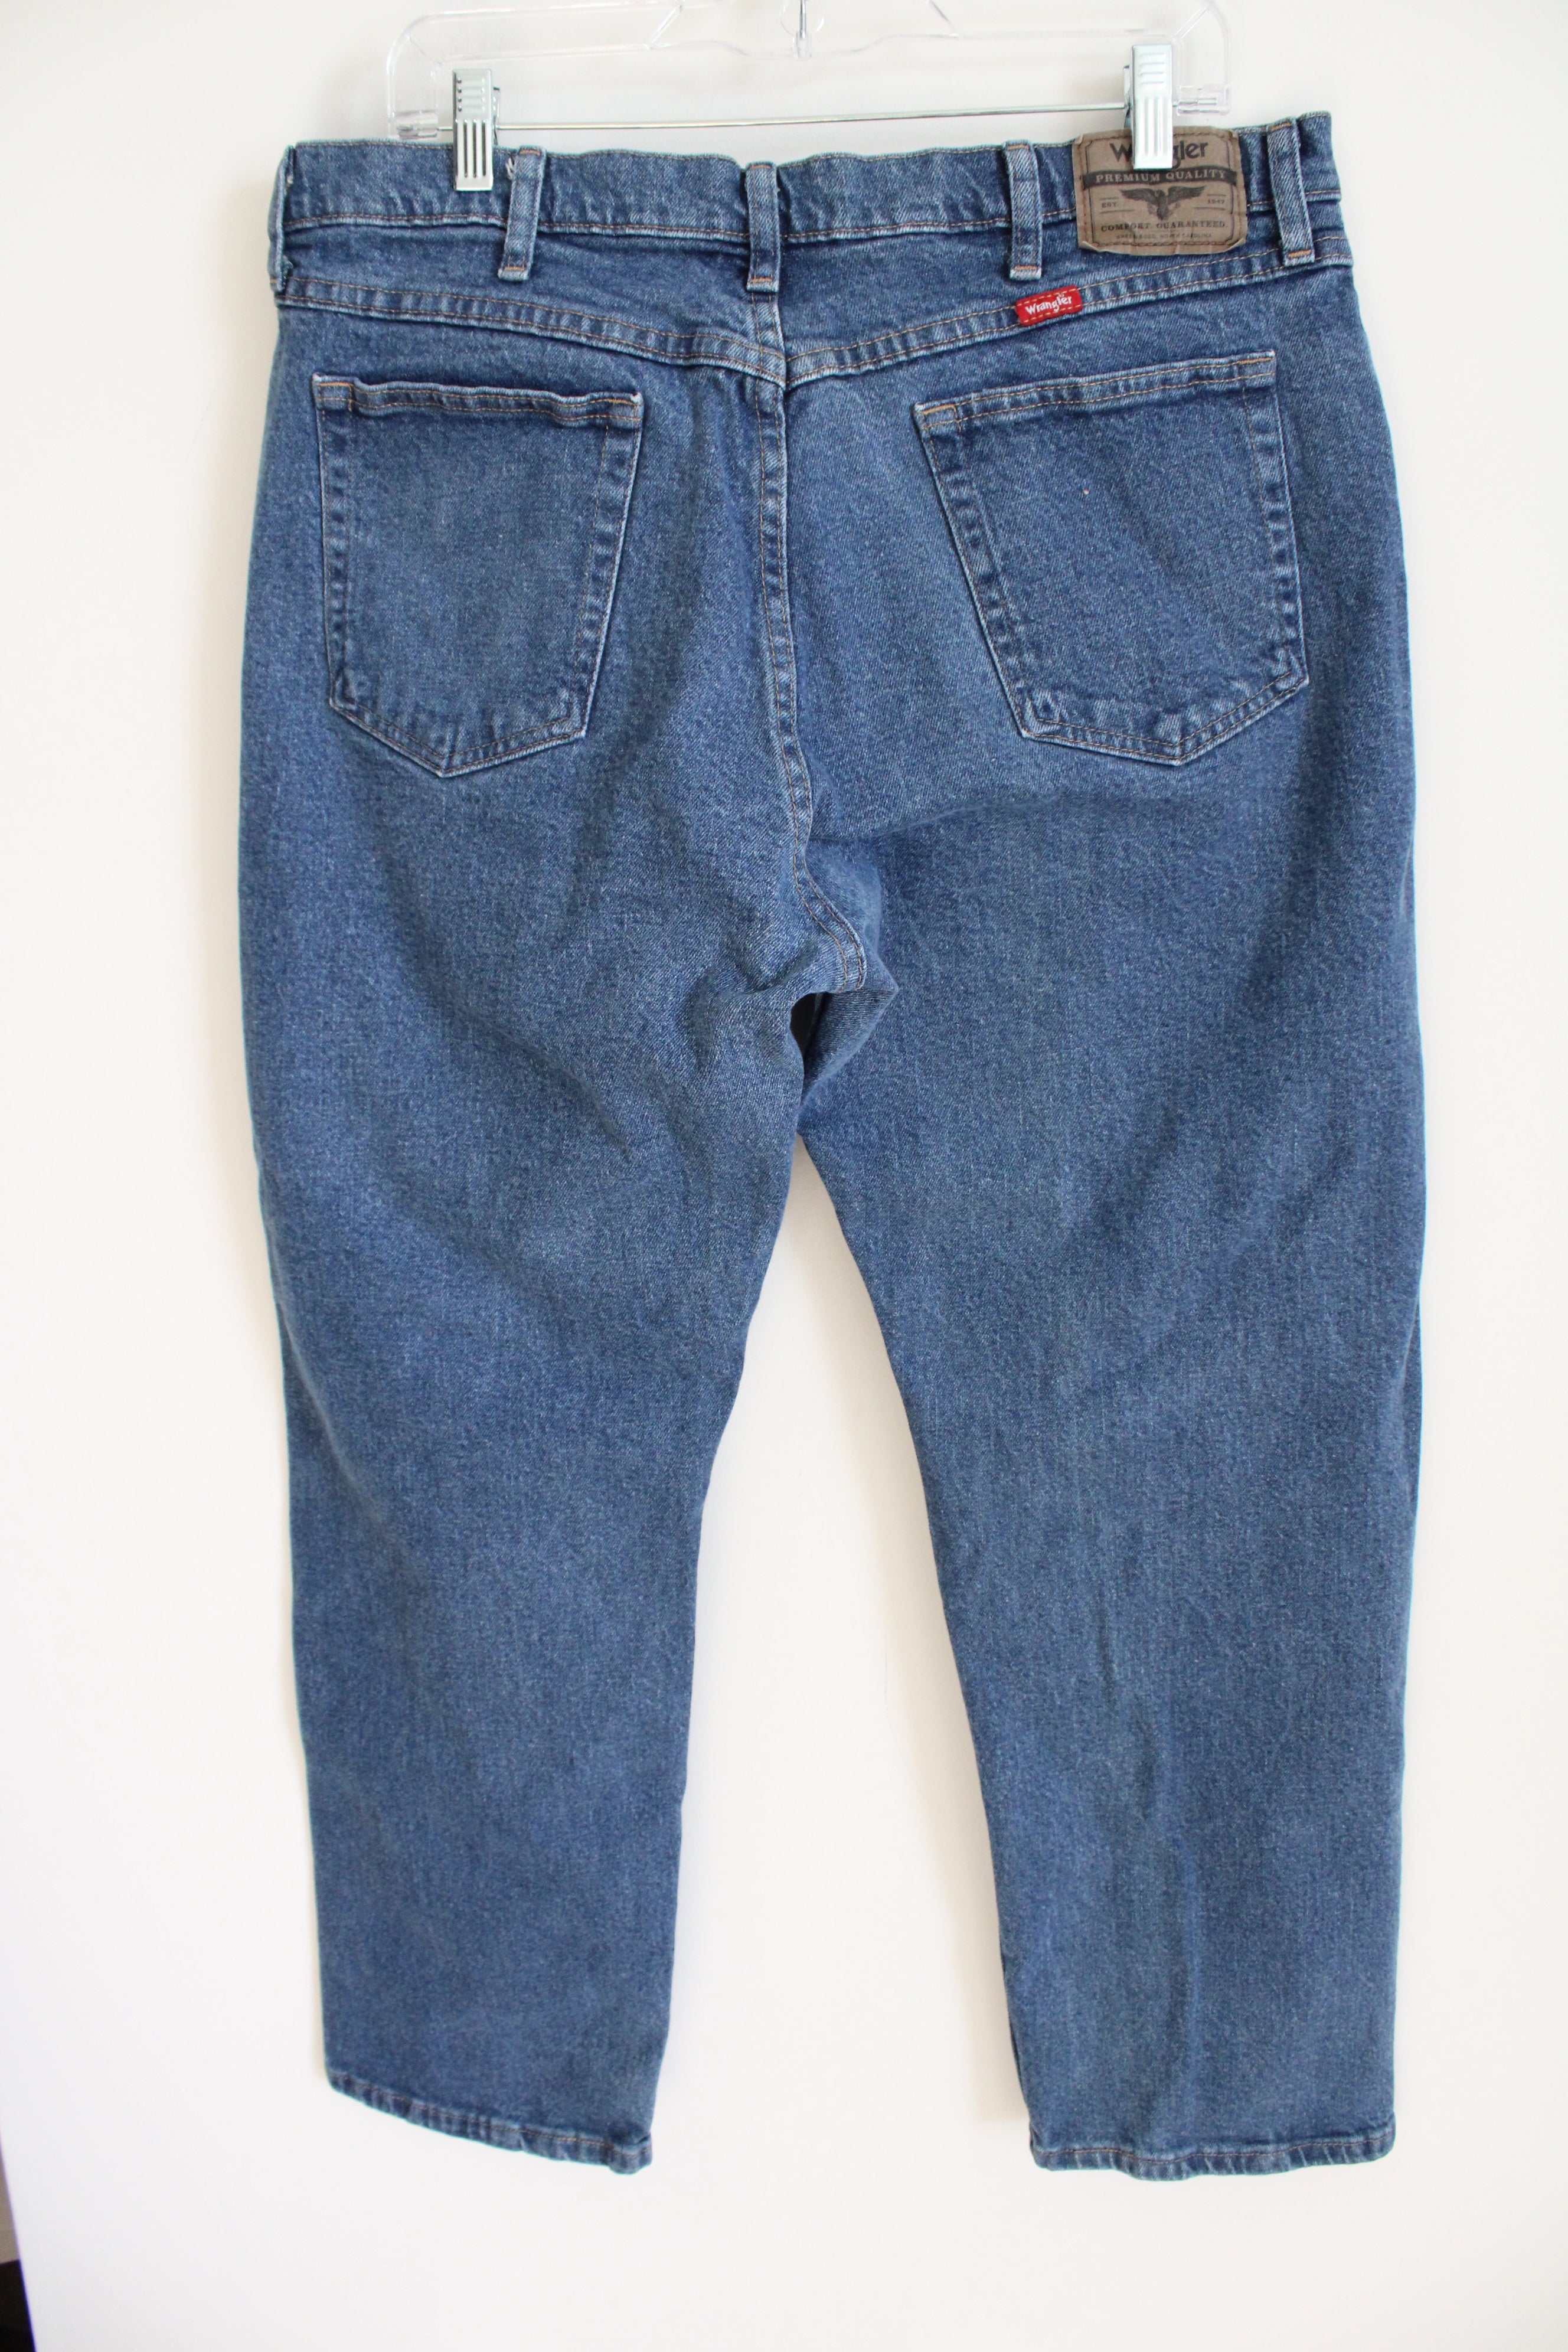 Wrangler Denim Jeans | 36X30